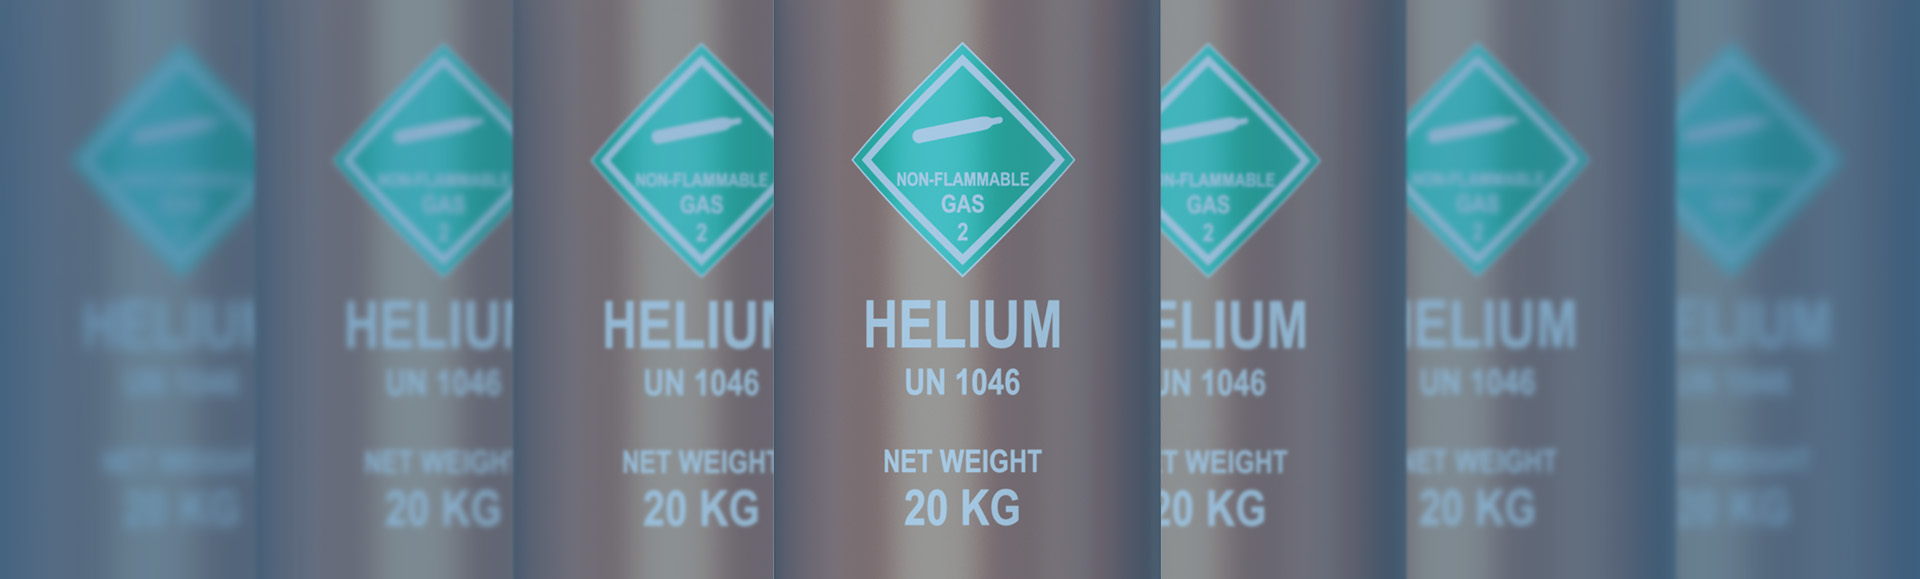 IMG - Buy Helium Gas Seychelles